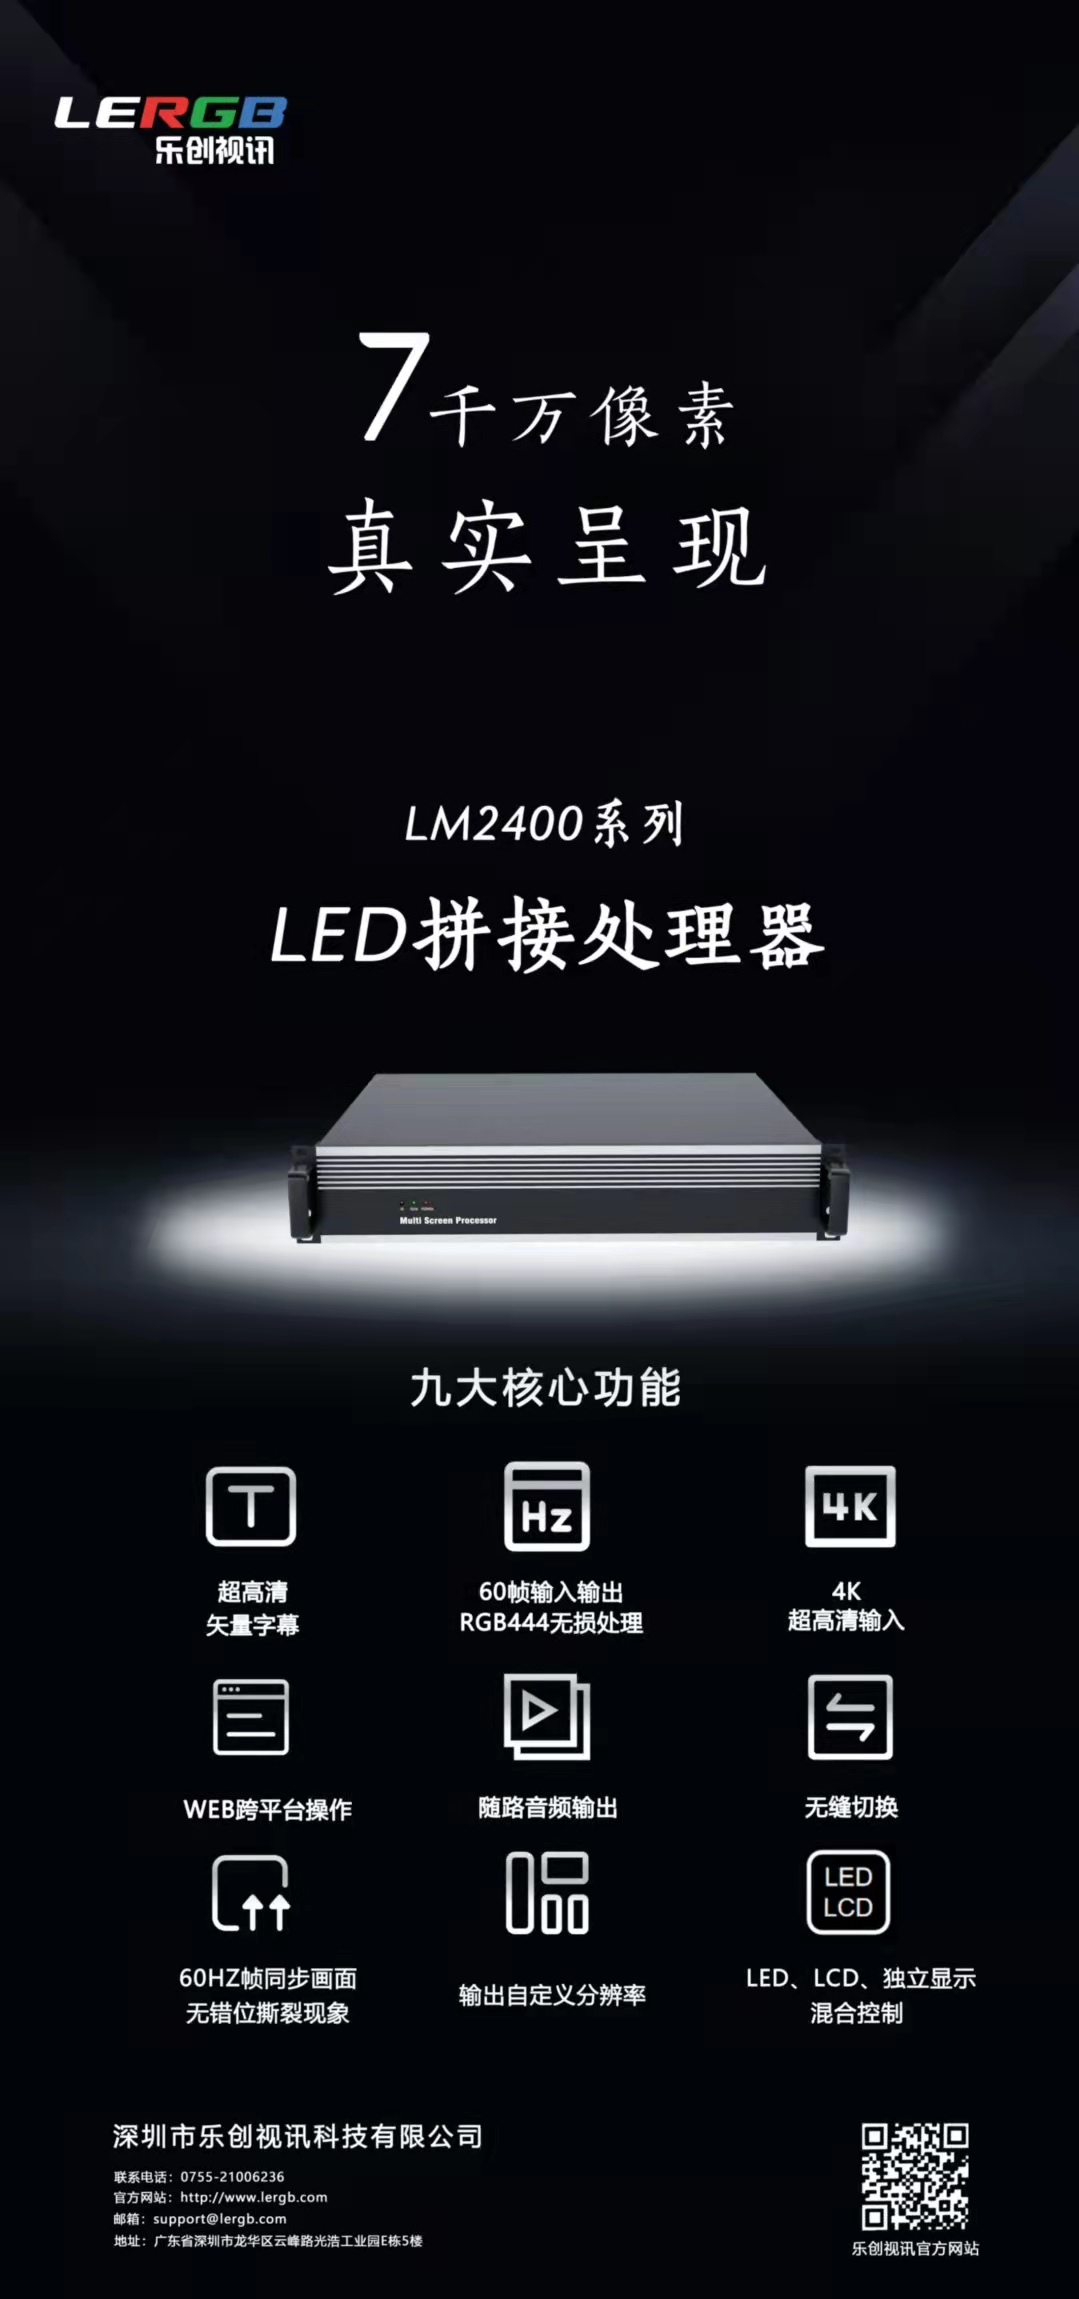 龙猫LM2400系列标准型LED拼接处理器 简约而不简单 ！ 最大支持7千万像素带载  音频，4k，矢量字幕，WEB控制